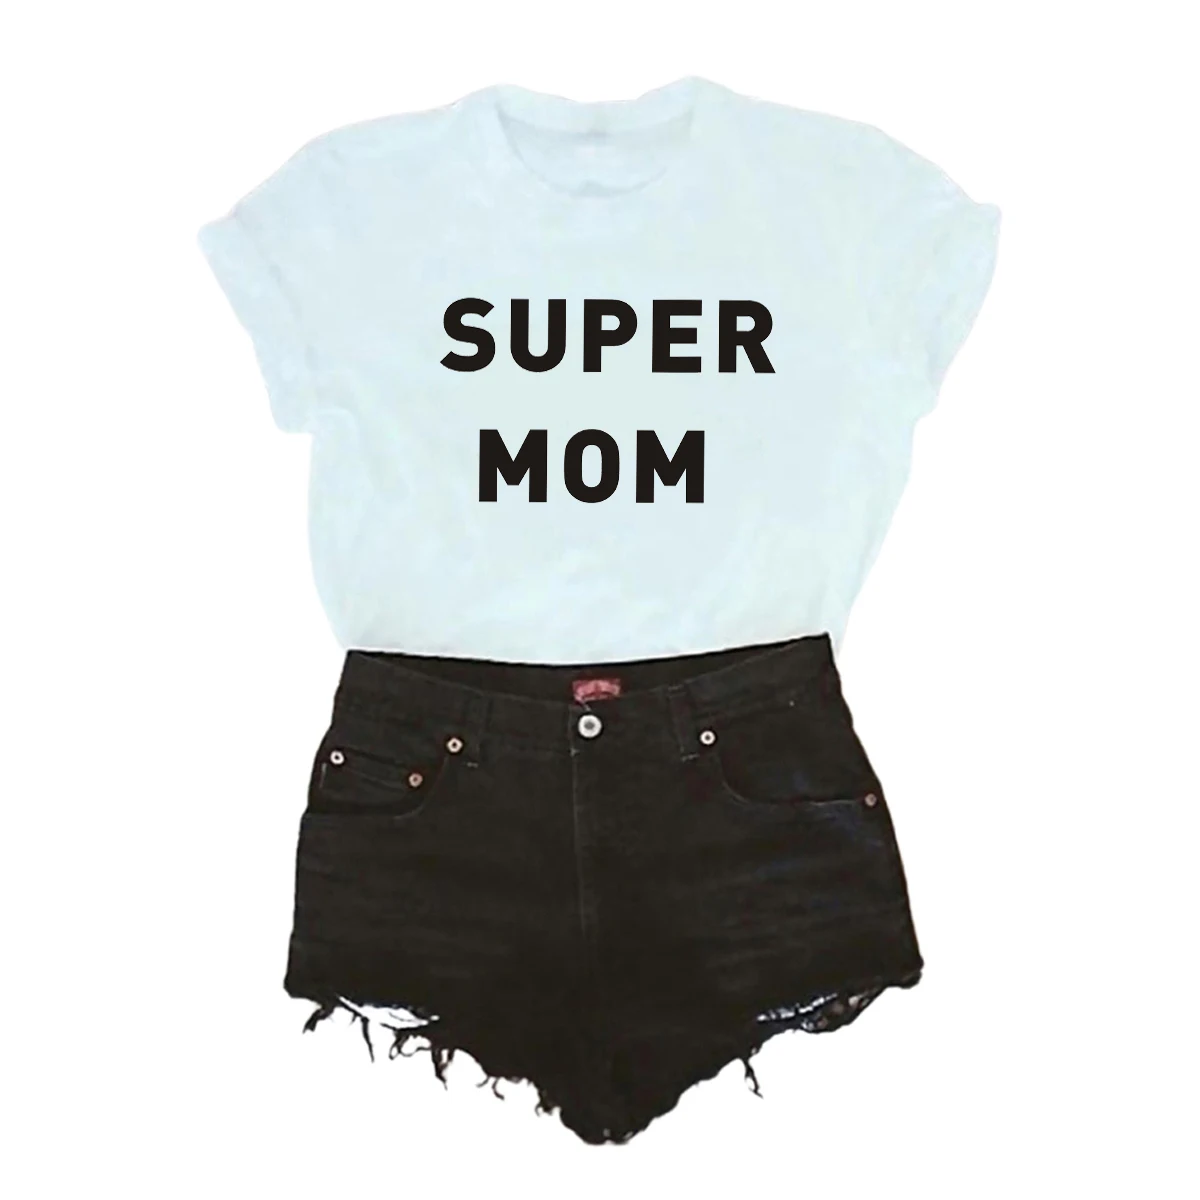 Футболка женская с надписью Super Mom, хлопковая Повседневная смешная рубашка, топ для девушек и мам, хипстер, Tumblr, Прямая поставка